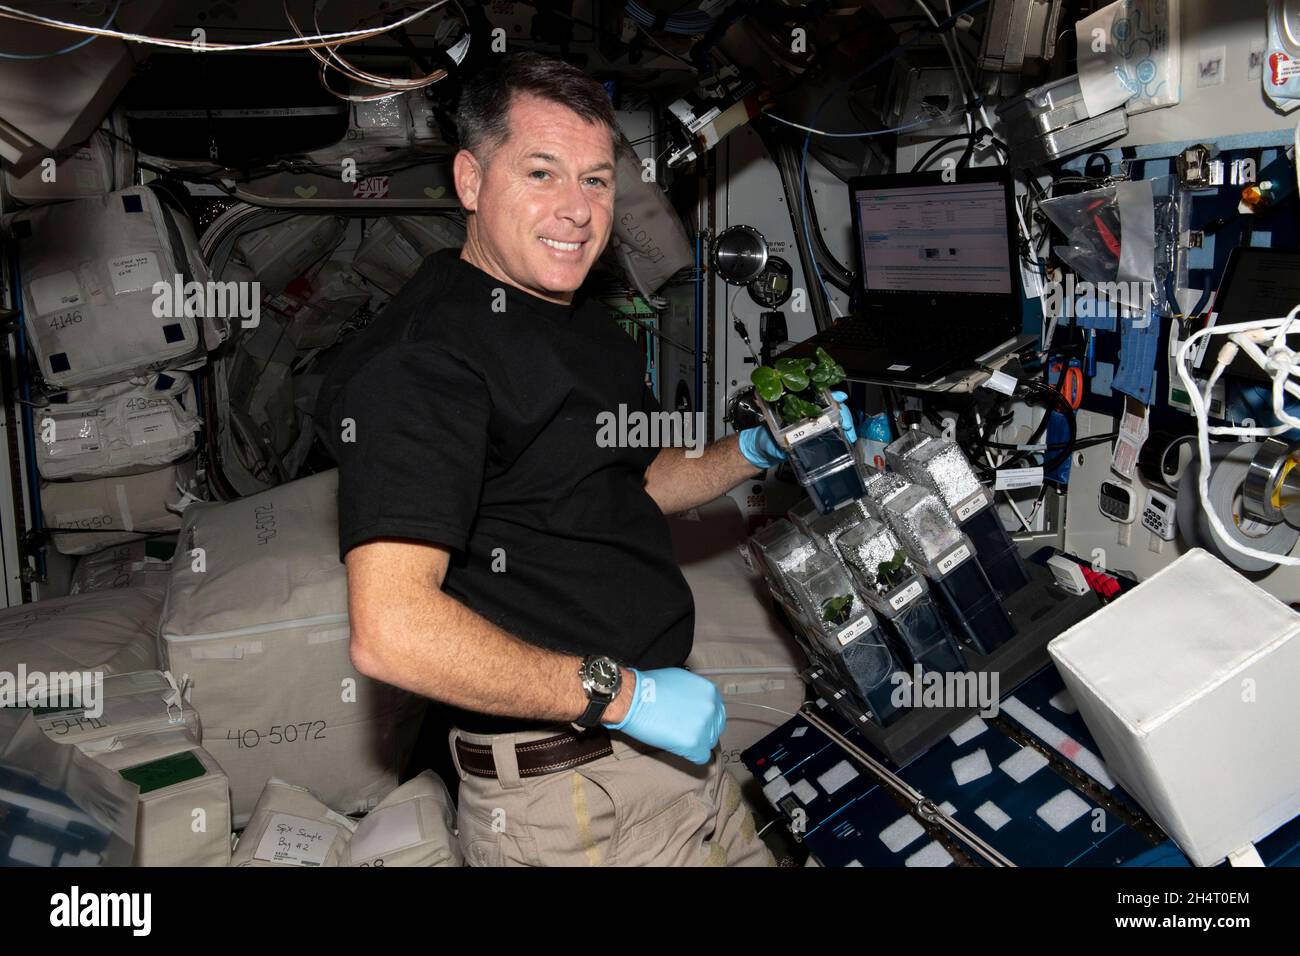 NASA-Astronaut und Expedition 65 Flugingenieur Shane Kimbrough überprüft Baumwollpflanzen, die für die TICTOC-Weltraumbotaniestudie wachsen. Die Untersuchung befasst sich mit der Genexpression und dem Wurzelwachstum in der Schwerelosigkeit, die am 11. Juni 2021 sowohl die Weltraumlandwirtschaft als auch den Baumwollanbau auf der Erde verbessern könnten. Quelle: NASA über CNP Stockfoto